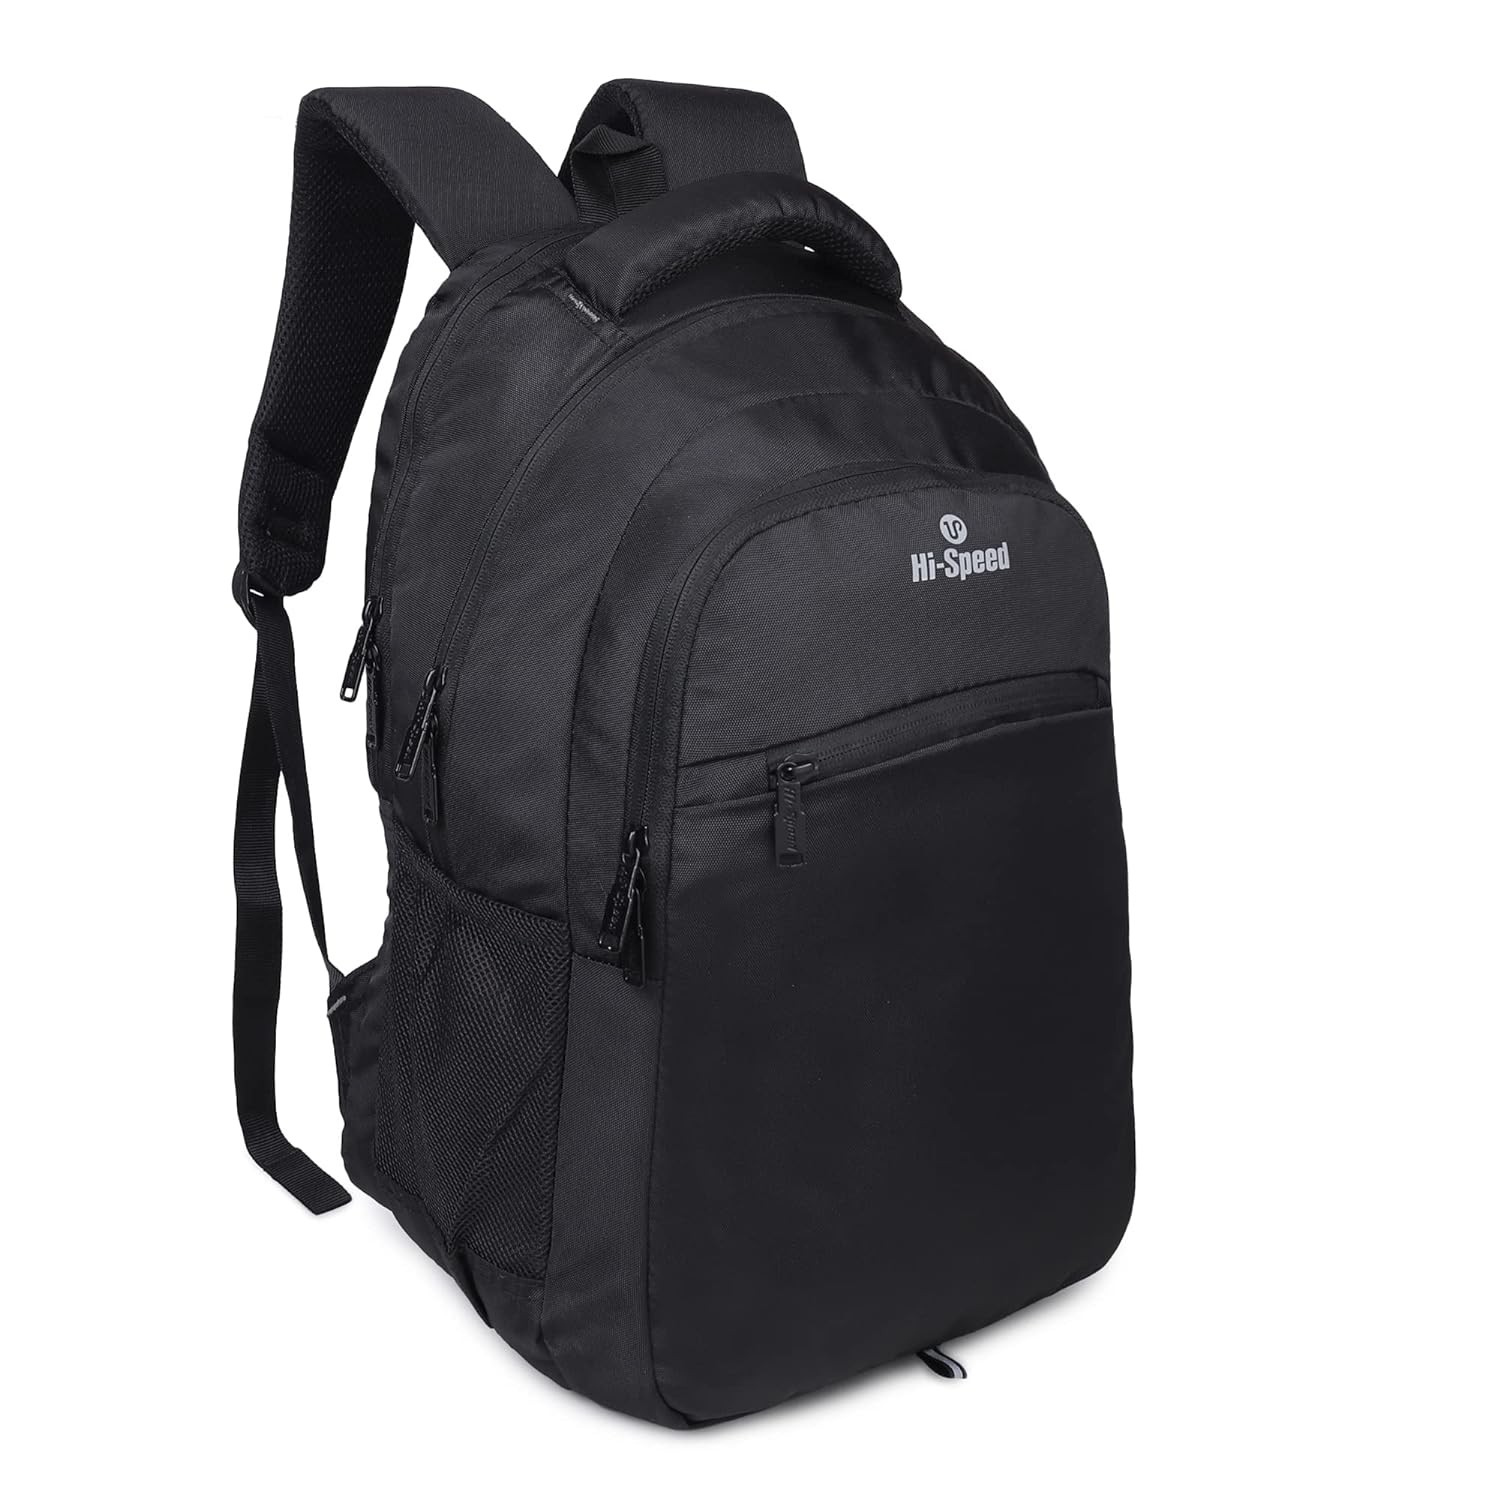 Hi-Speed Polyester 26 Ltr Black  Laptop Backpack